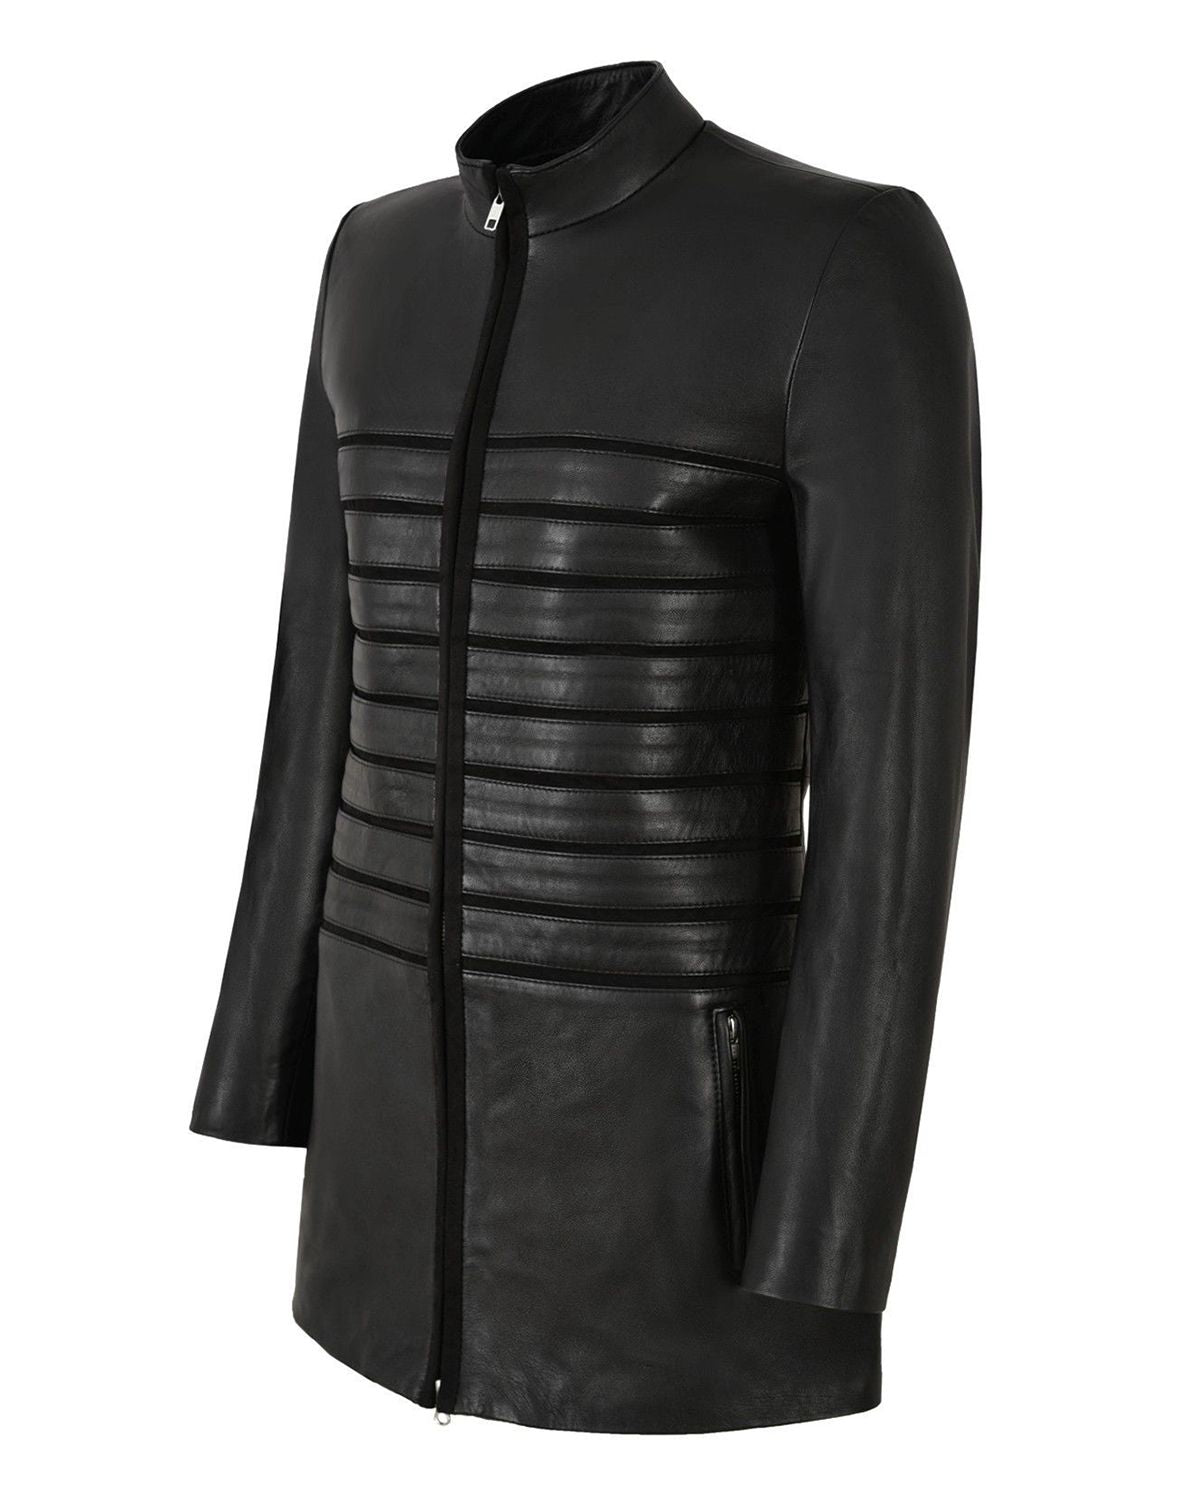 Womens 3/4 Black Long Leather Jacket | Elite Jacket